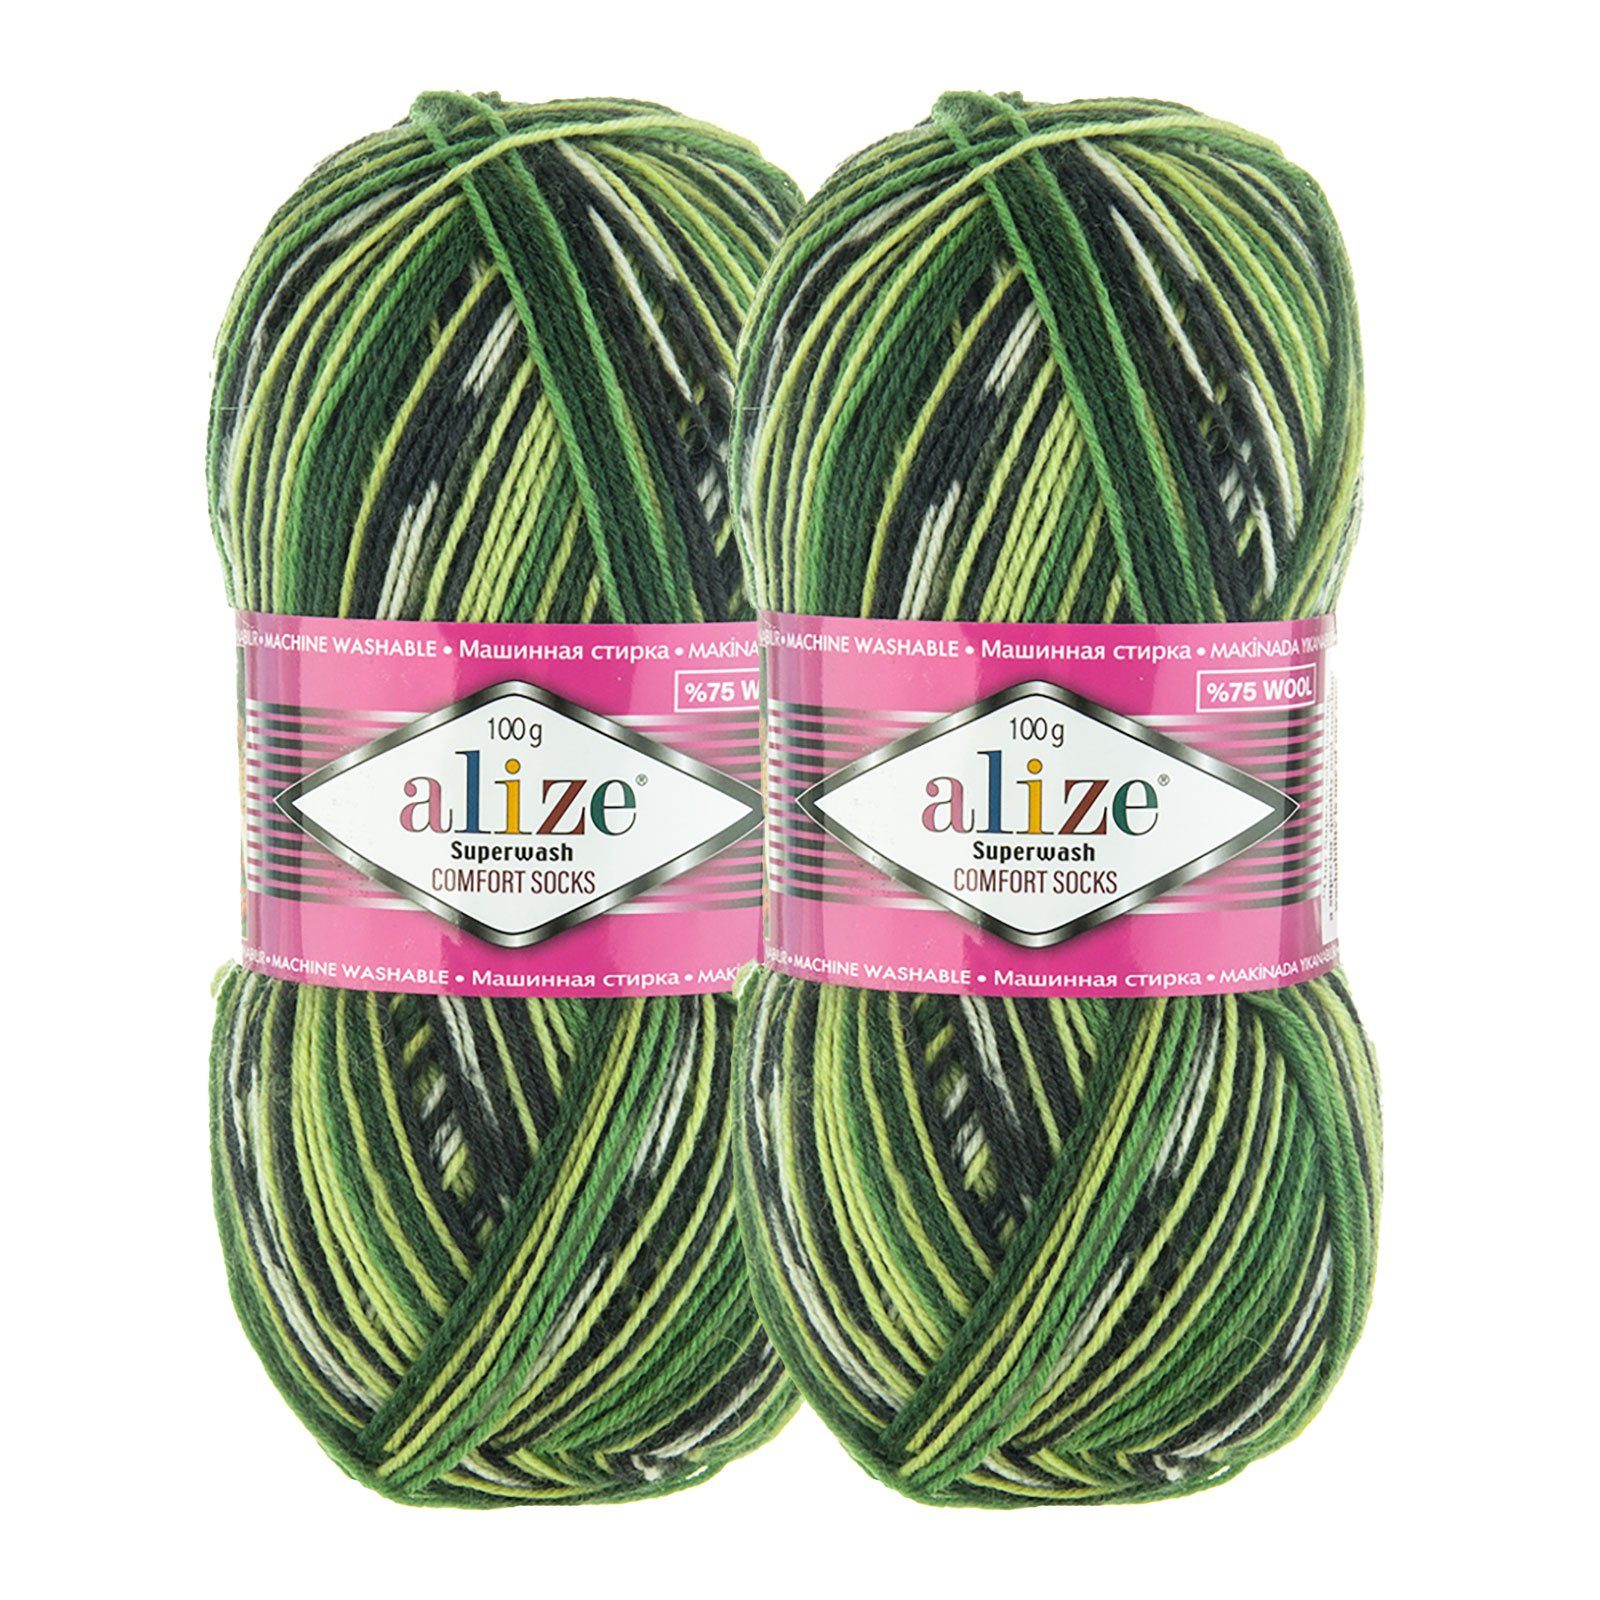 Alize 2 x 100g Sockenwolle Superwash Comfort Häkelwolle, 2696 anthrazit grün creme